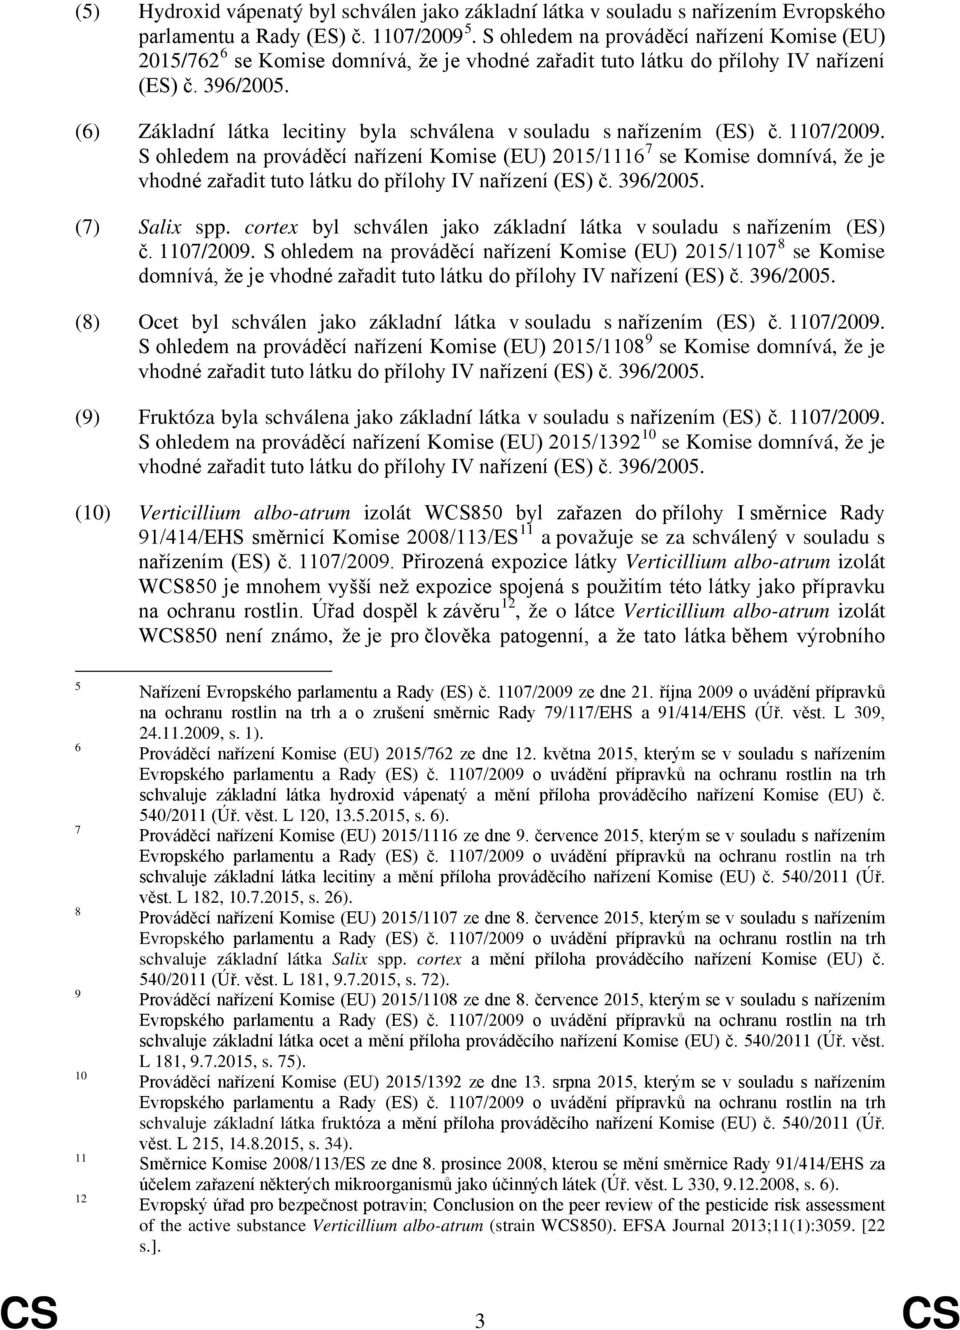 (6) Základní látka lecitiny byla schválena v souladu s nařízením (ES) č. 1107/2009. S ohledem na prováděcí nařízení Komise (EU) 2015/1116 7 se Komise domnívá, že je (7) Salix spp.